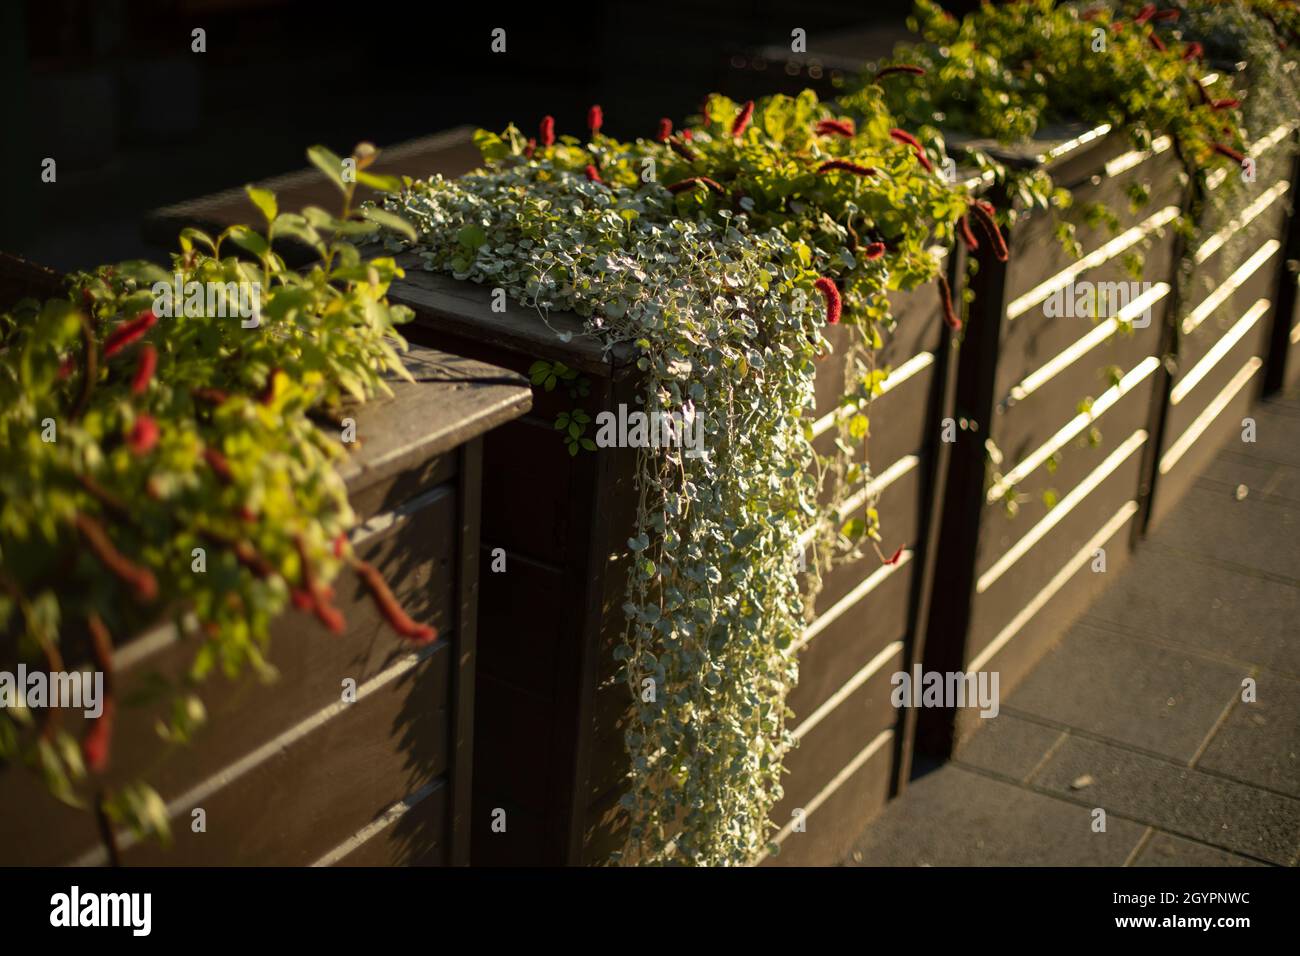 Pflanzen in Töpfen auf einer hölzernen Hecke. Grüne Pflanzen im Außenbereich  des Restaurants Stockfotografie - Alamy